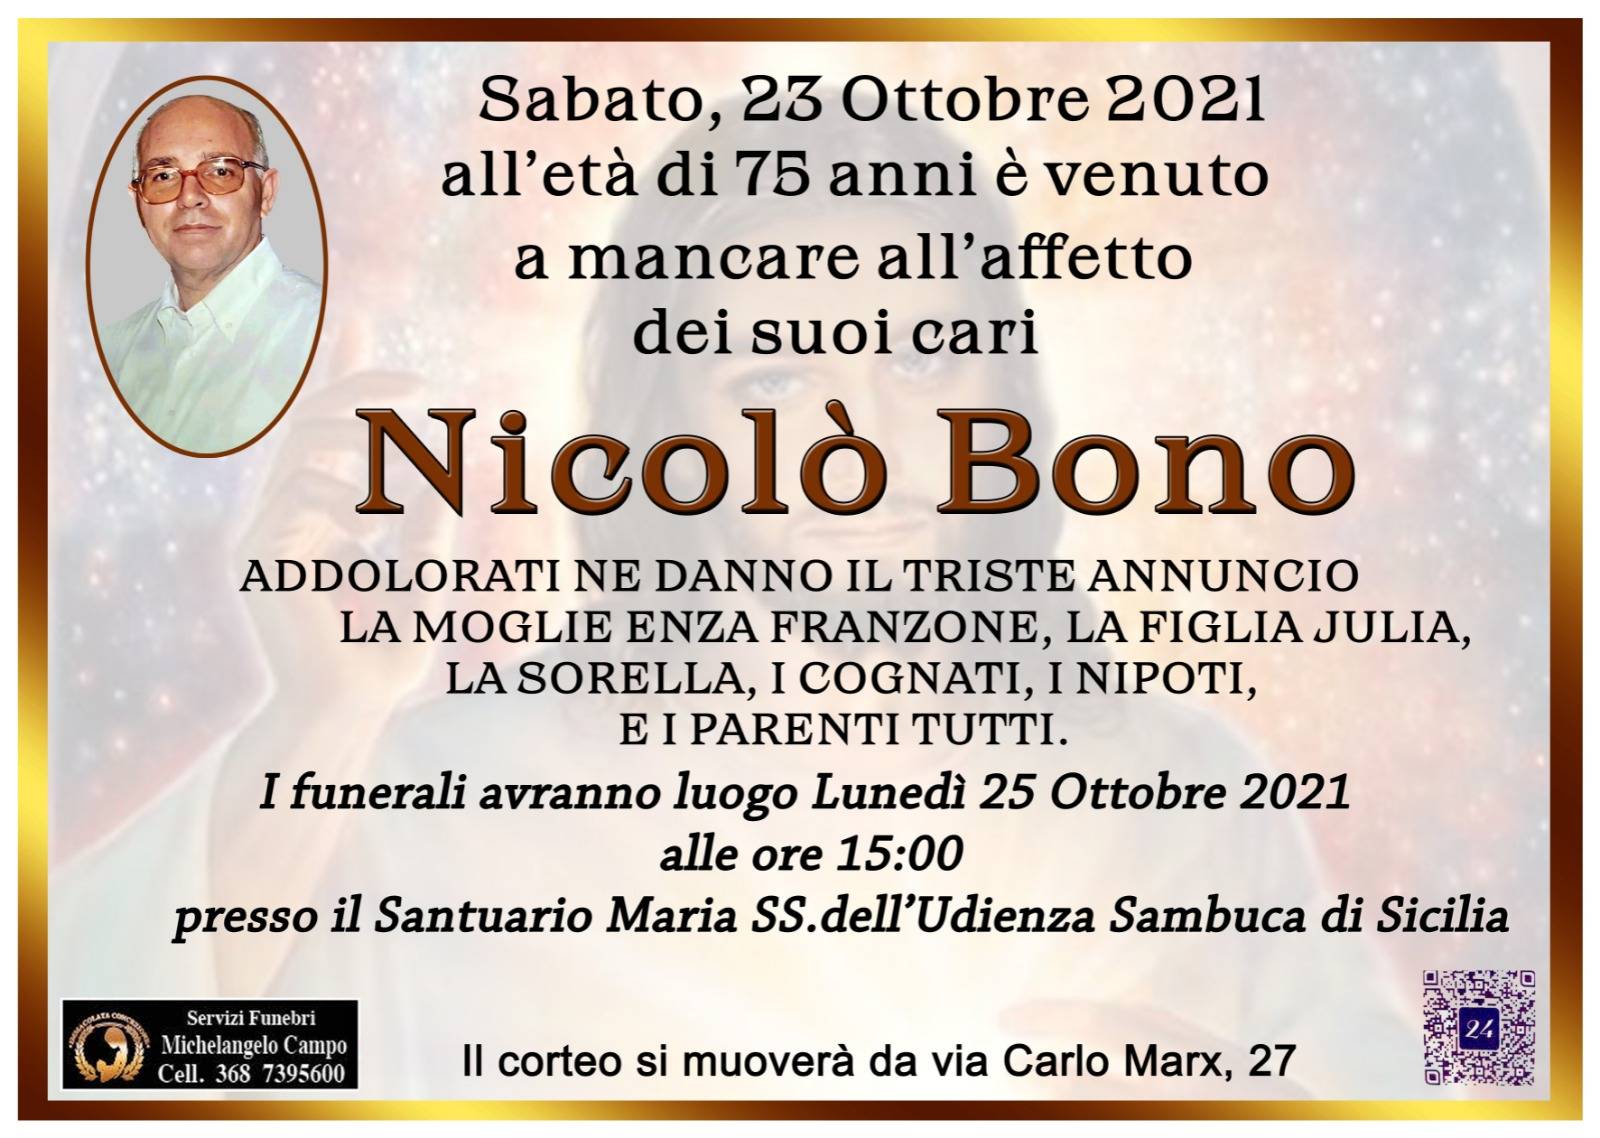 Nicolo Bono